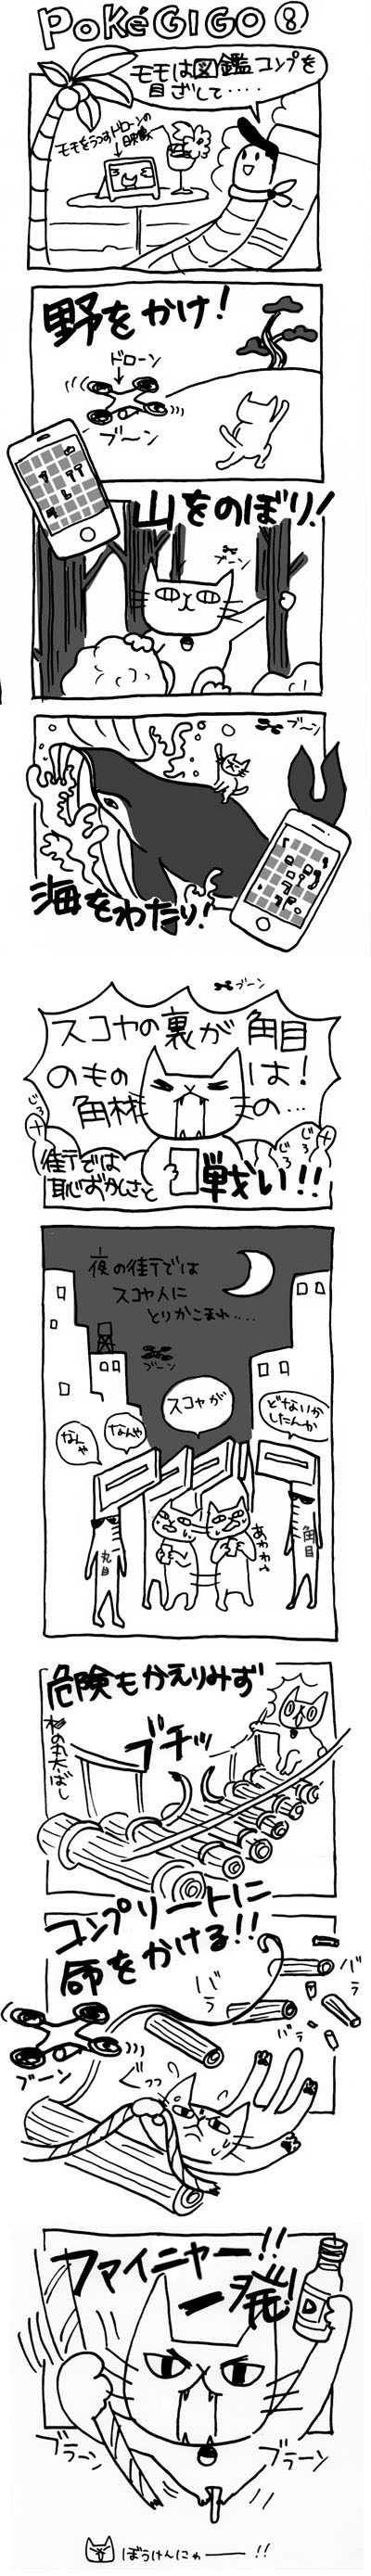 木工漫画　PokeGI GO ⑧　杉の丸太橋　0819